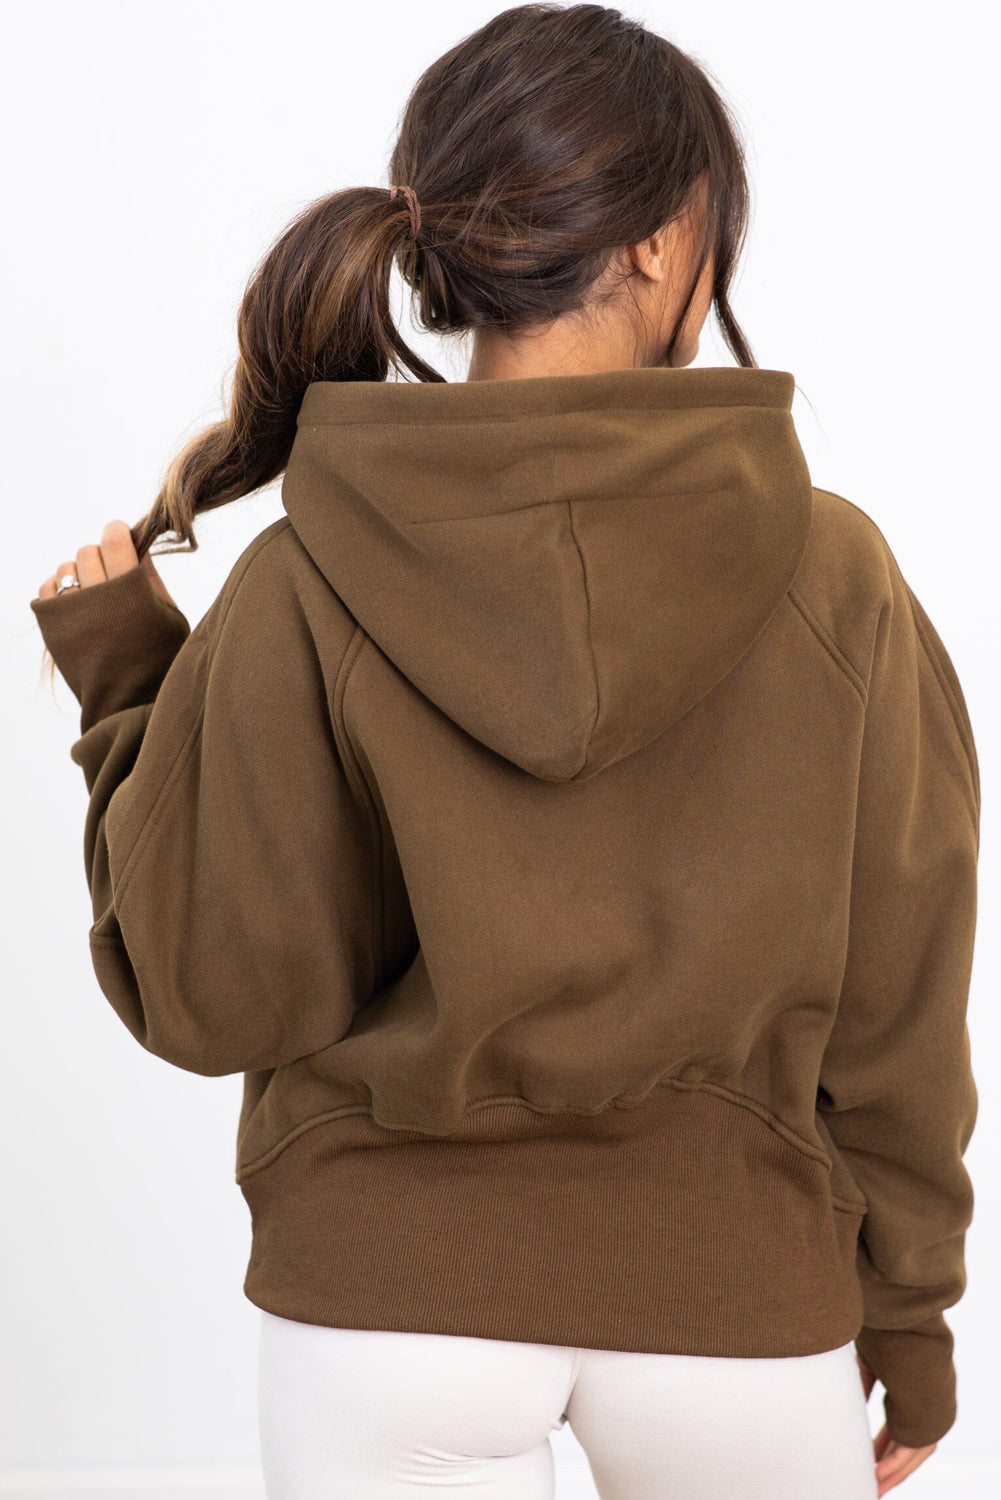 Ohlapen pulover s kapuco v obliki kengurujevega žepa in polzadrge